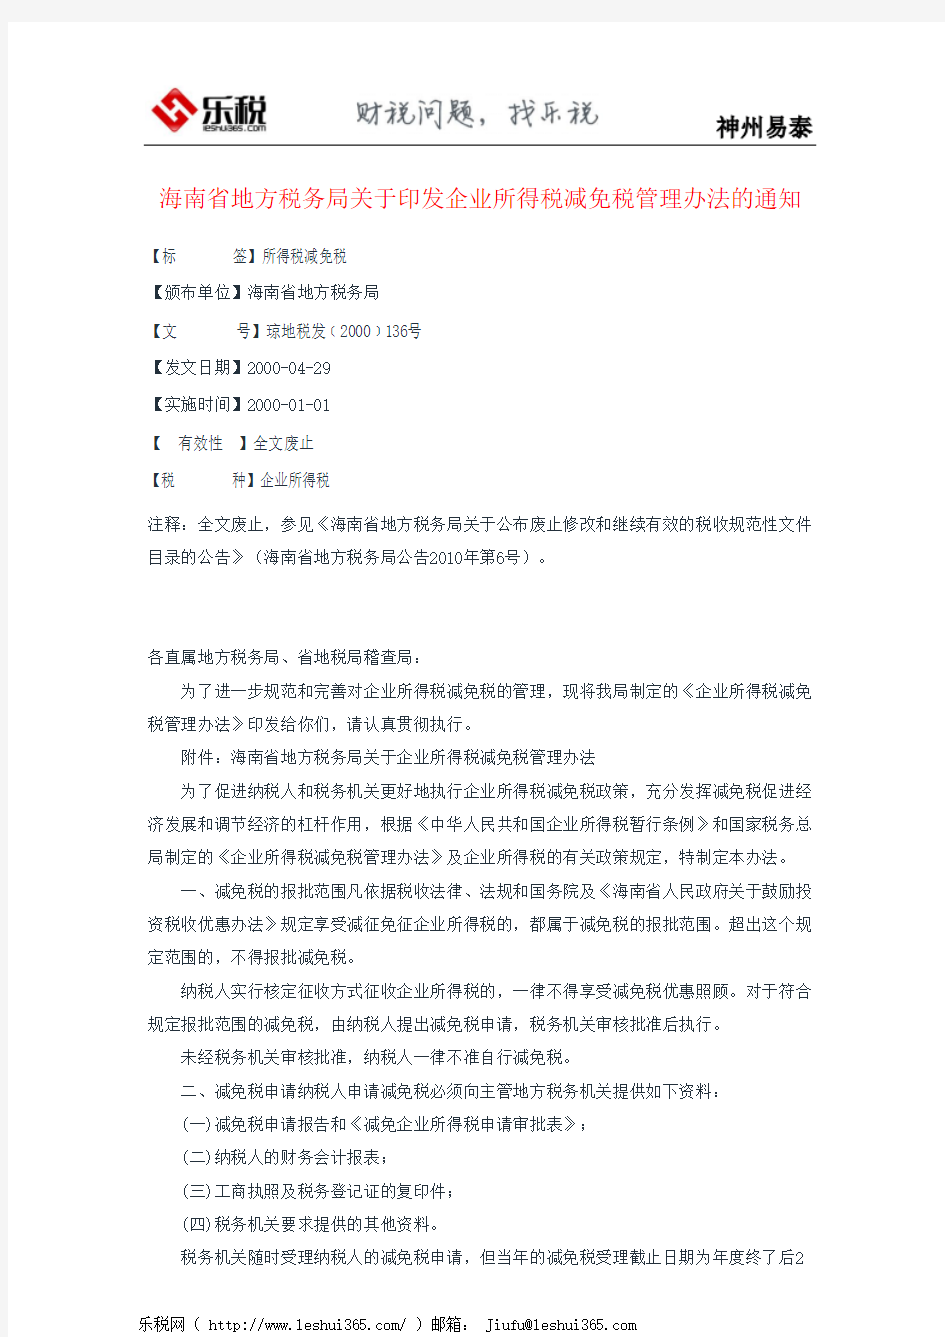 海南省地方税务局关于印发企业所得税减免税管理办法的通知